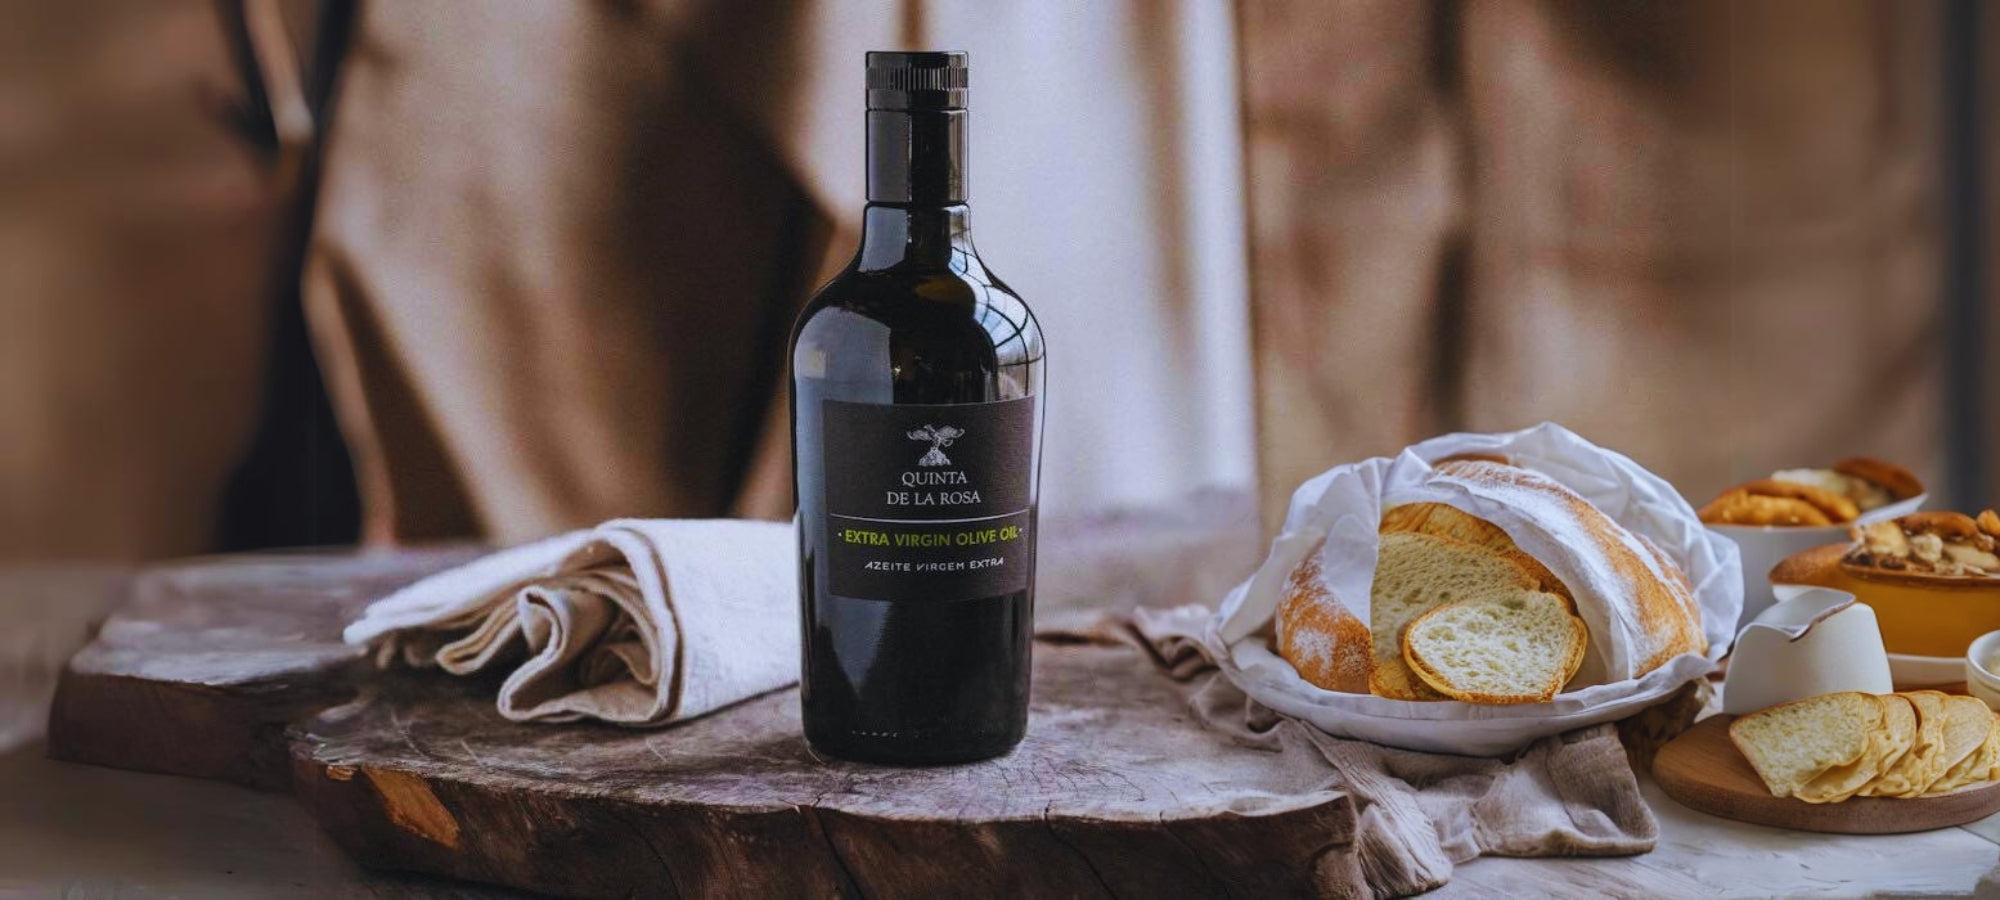 Olivenöl von Quinta de la Rosa, daneben ein Brotkorb auf einer Holzscheibe.